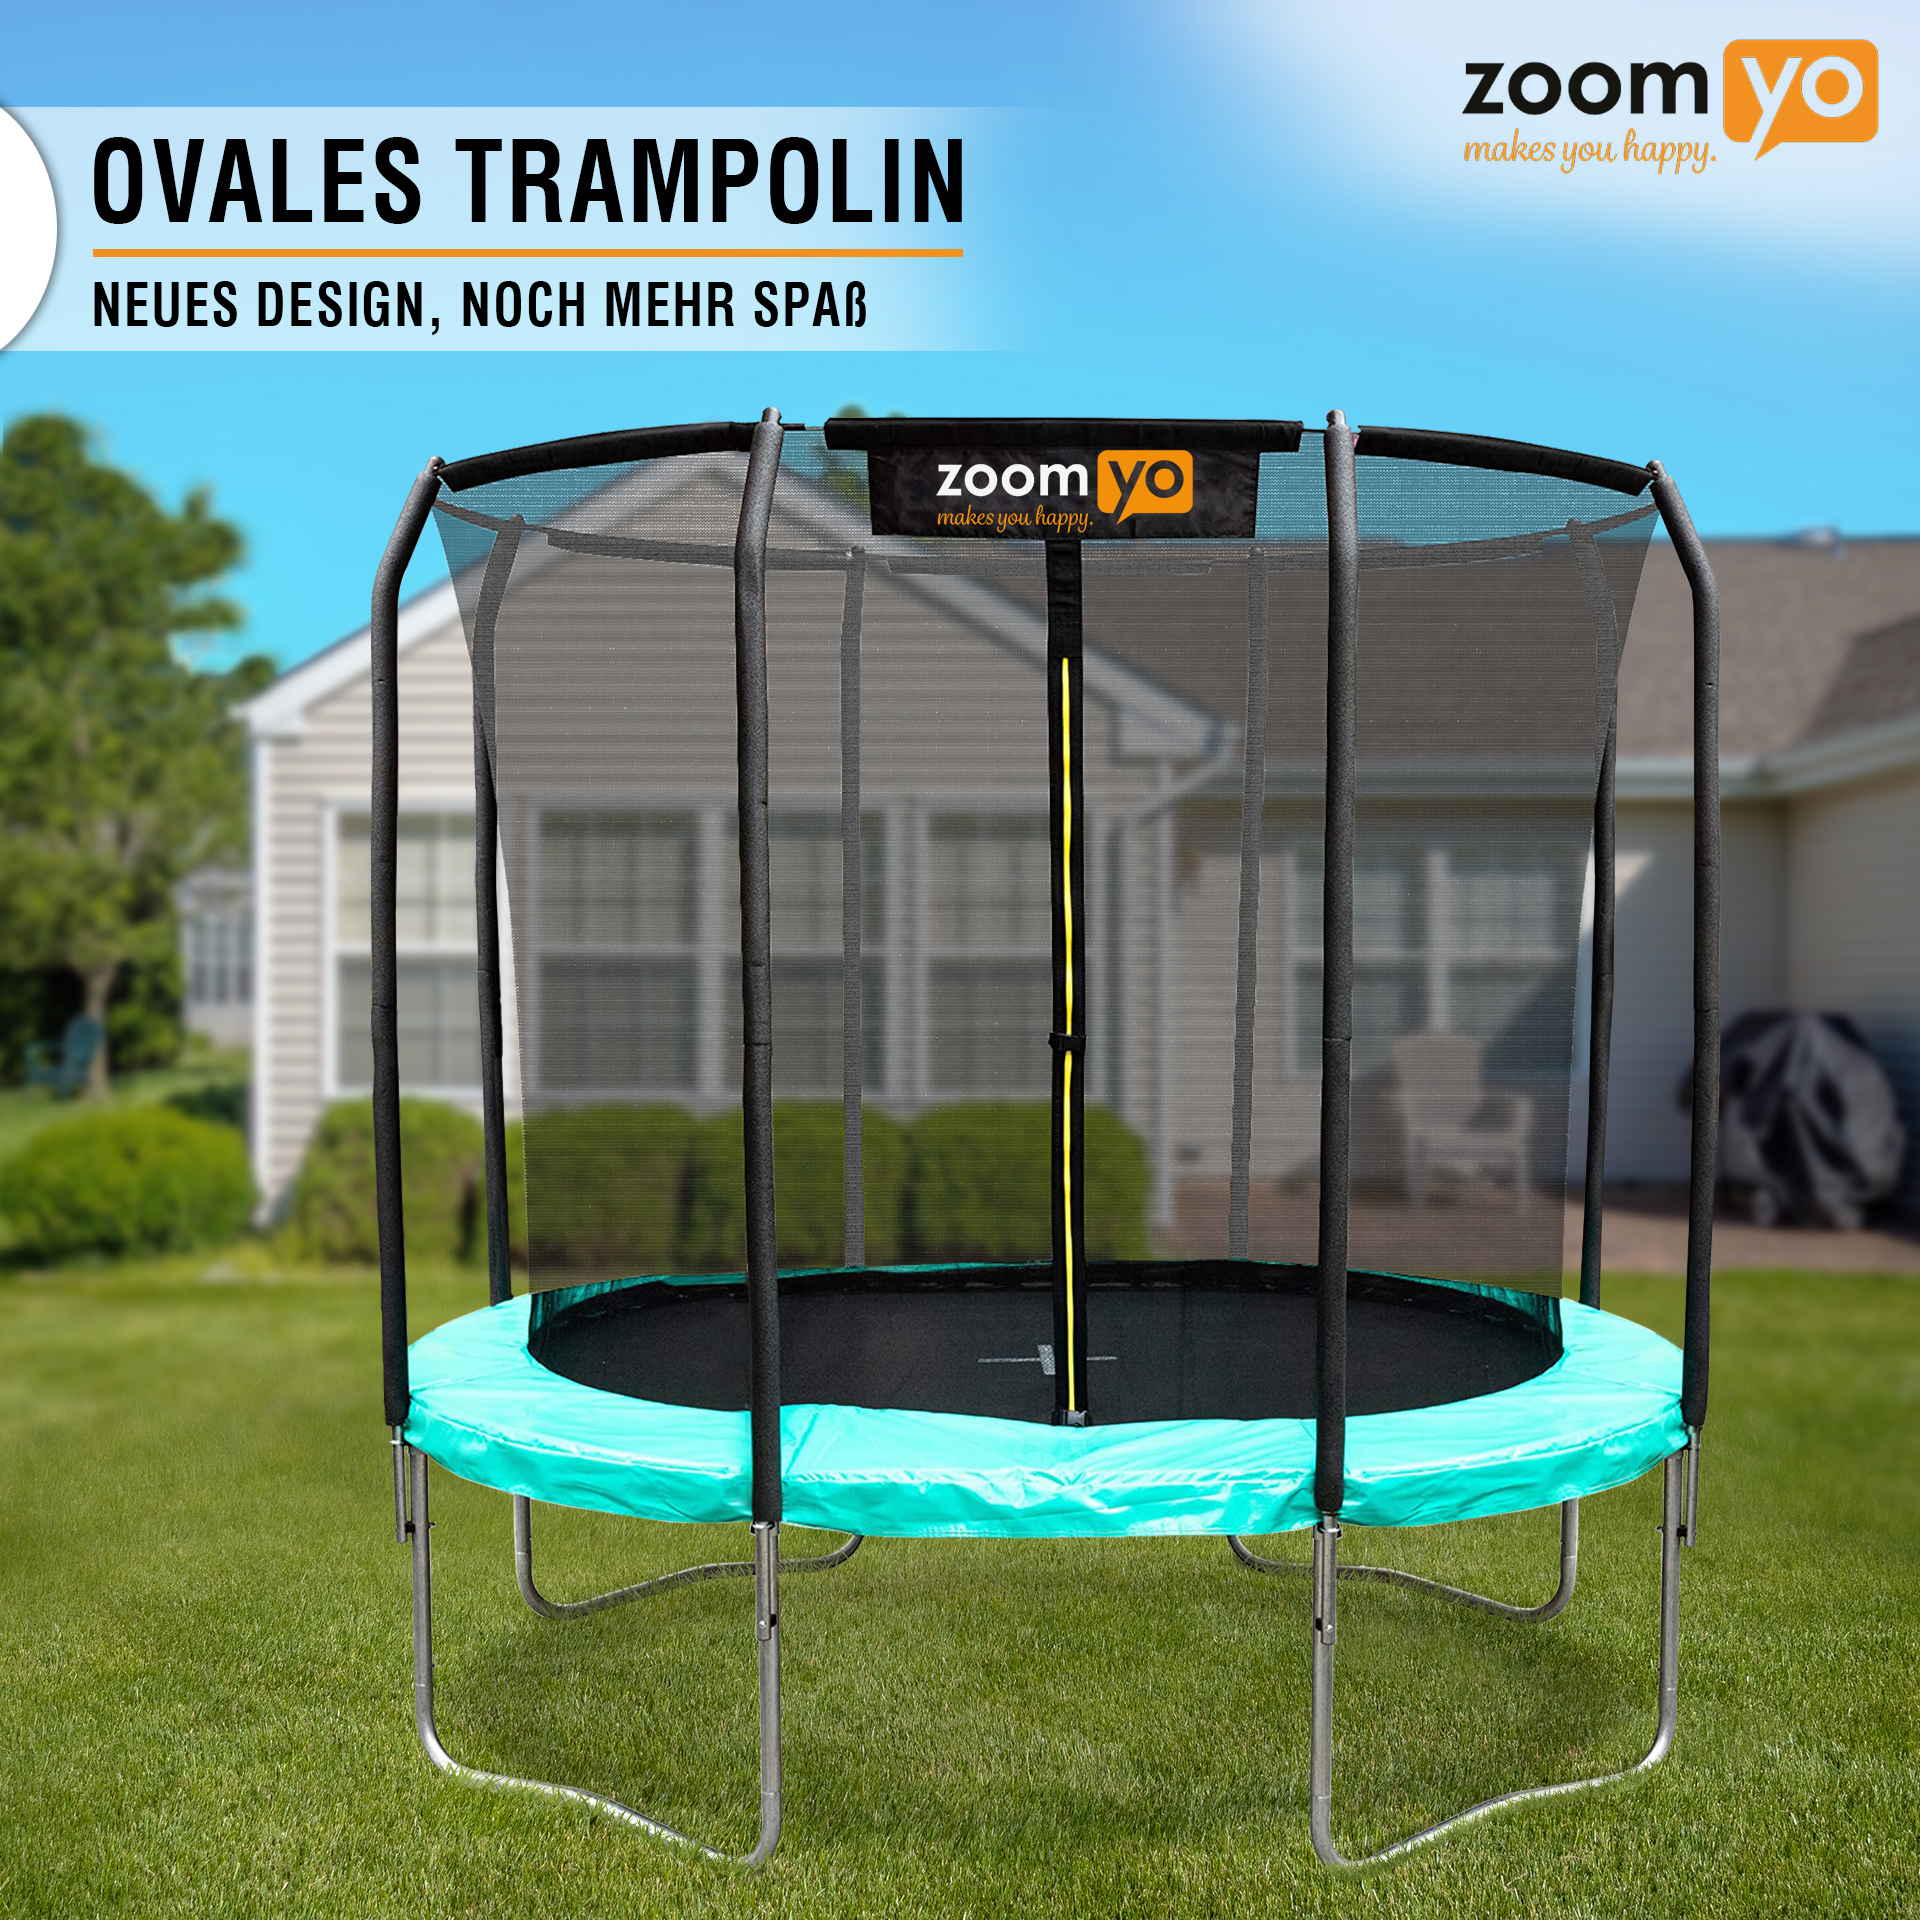 ZOOMYO Trampolin,oval,Leiter Sprungtechniken Trampolin, komplexe schwarz-Grün separat erhältlich,für